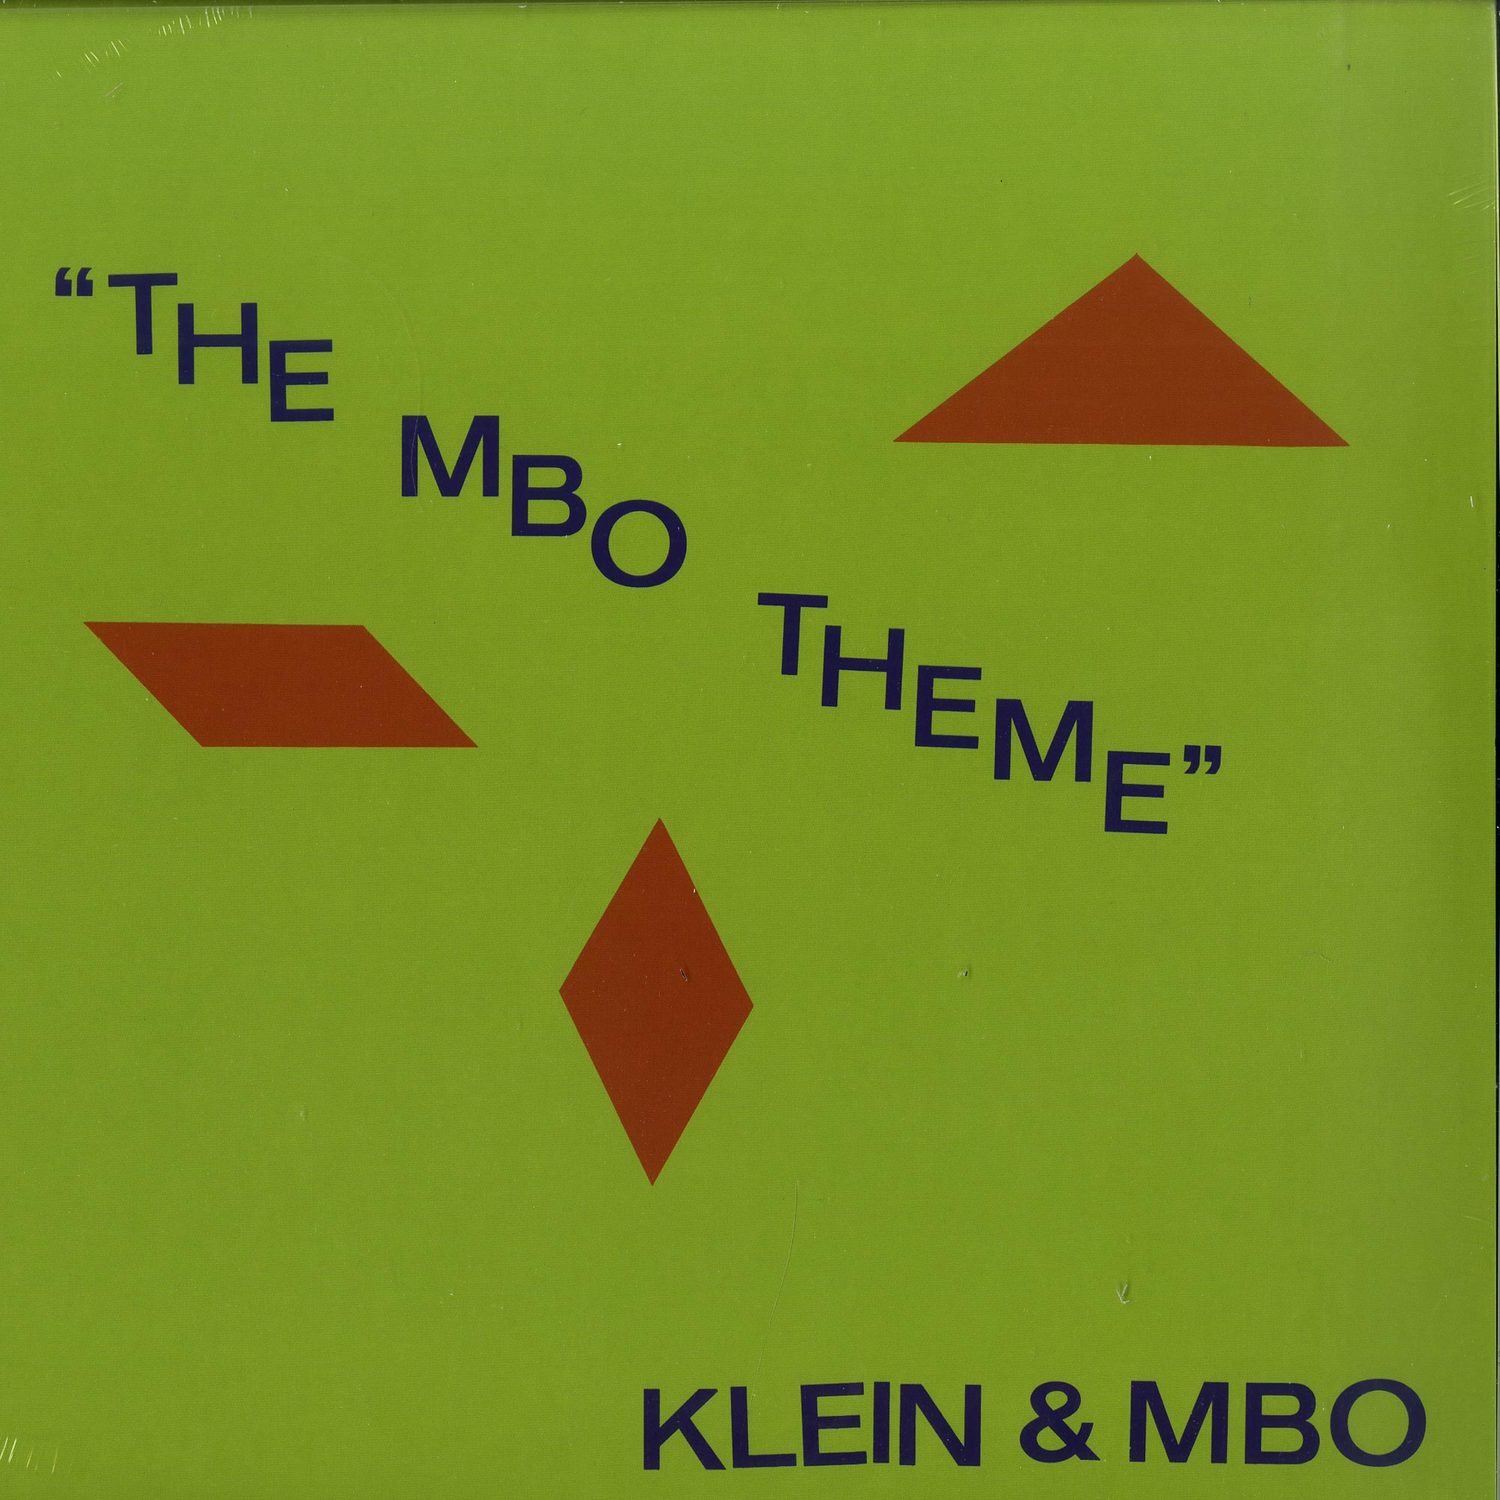 Klein & MBO - THE MBO THEME